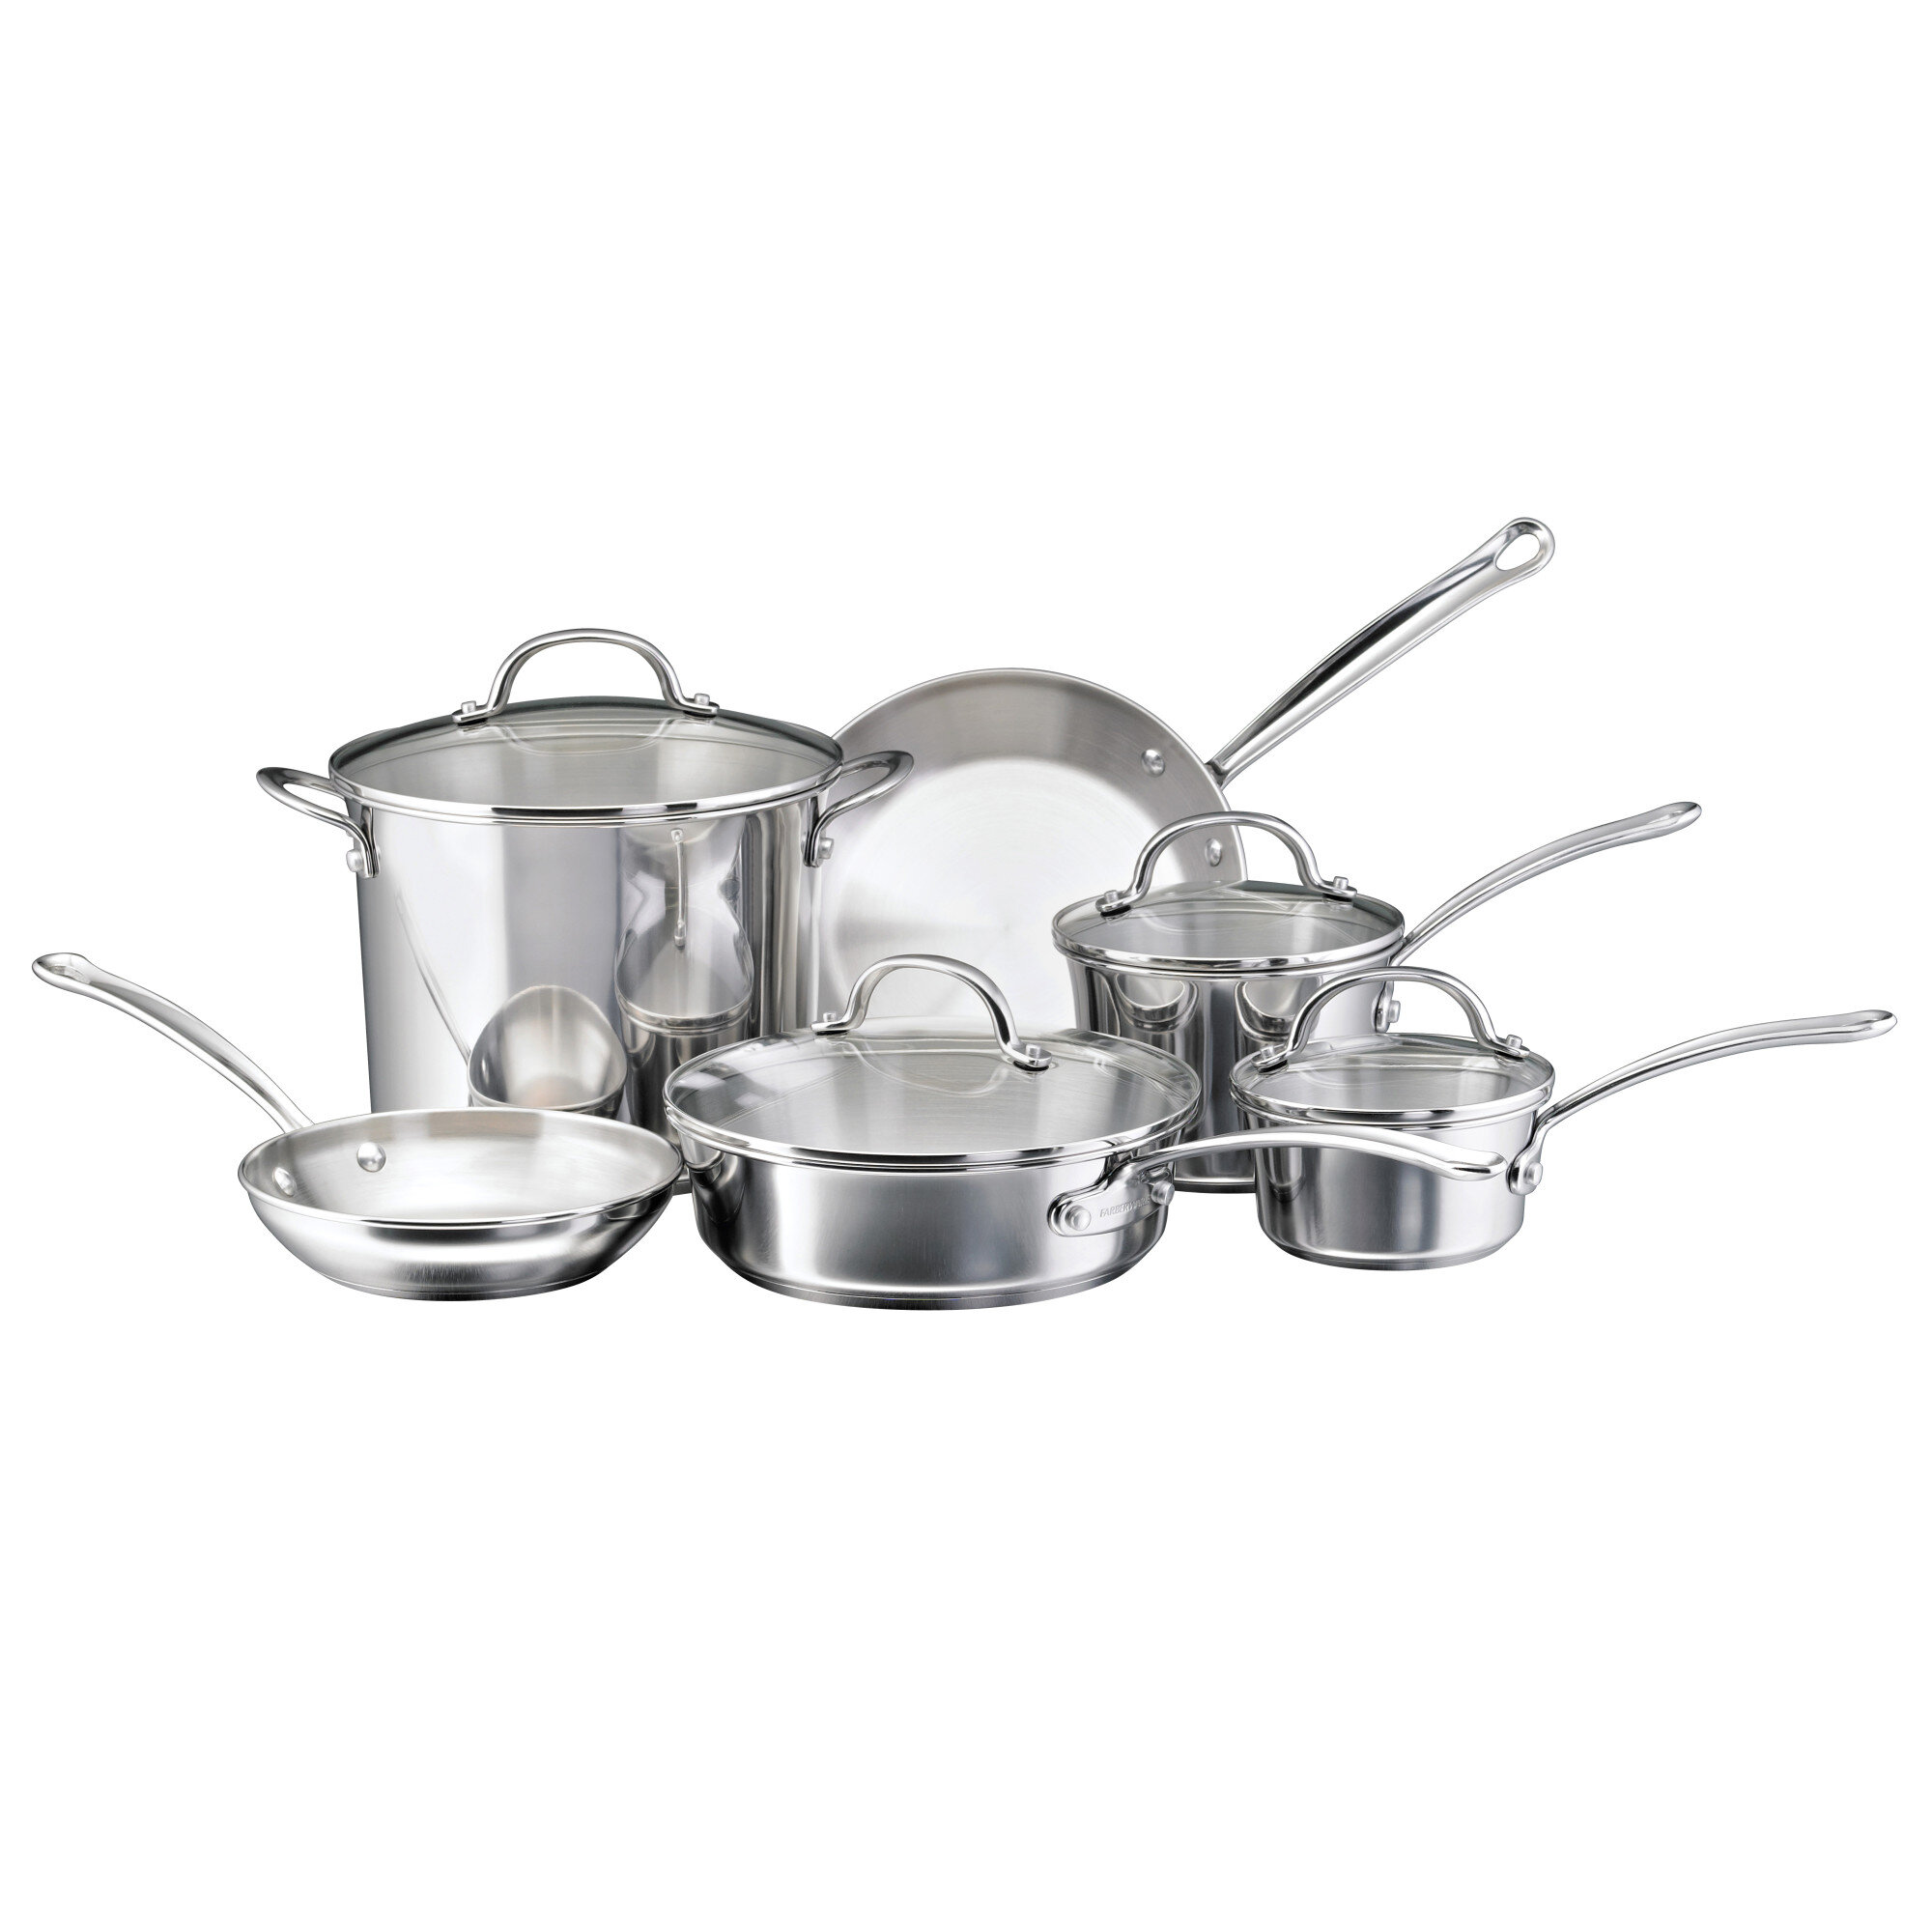 https://assets.wfcdn.com/im/05712022/compr-r85/1706/170614900/farberware-millennium-stainless-steel-cookware-pots-and-pans-set-10-piece-silver.jpg